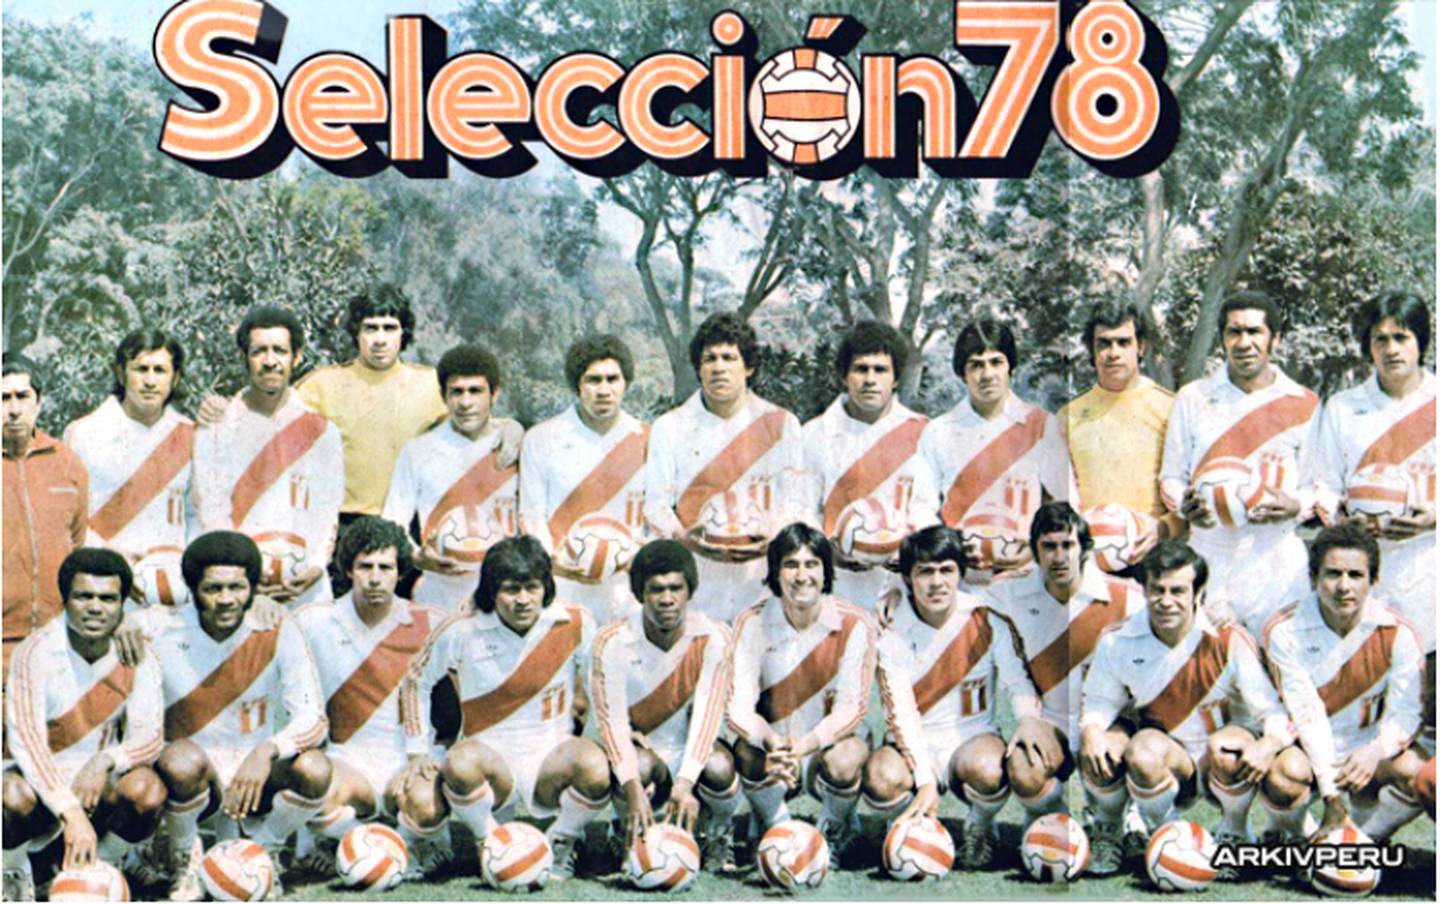 Así lució la selección peruana de fútbol en 1978. Fuente: Arkiv Perúdfd